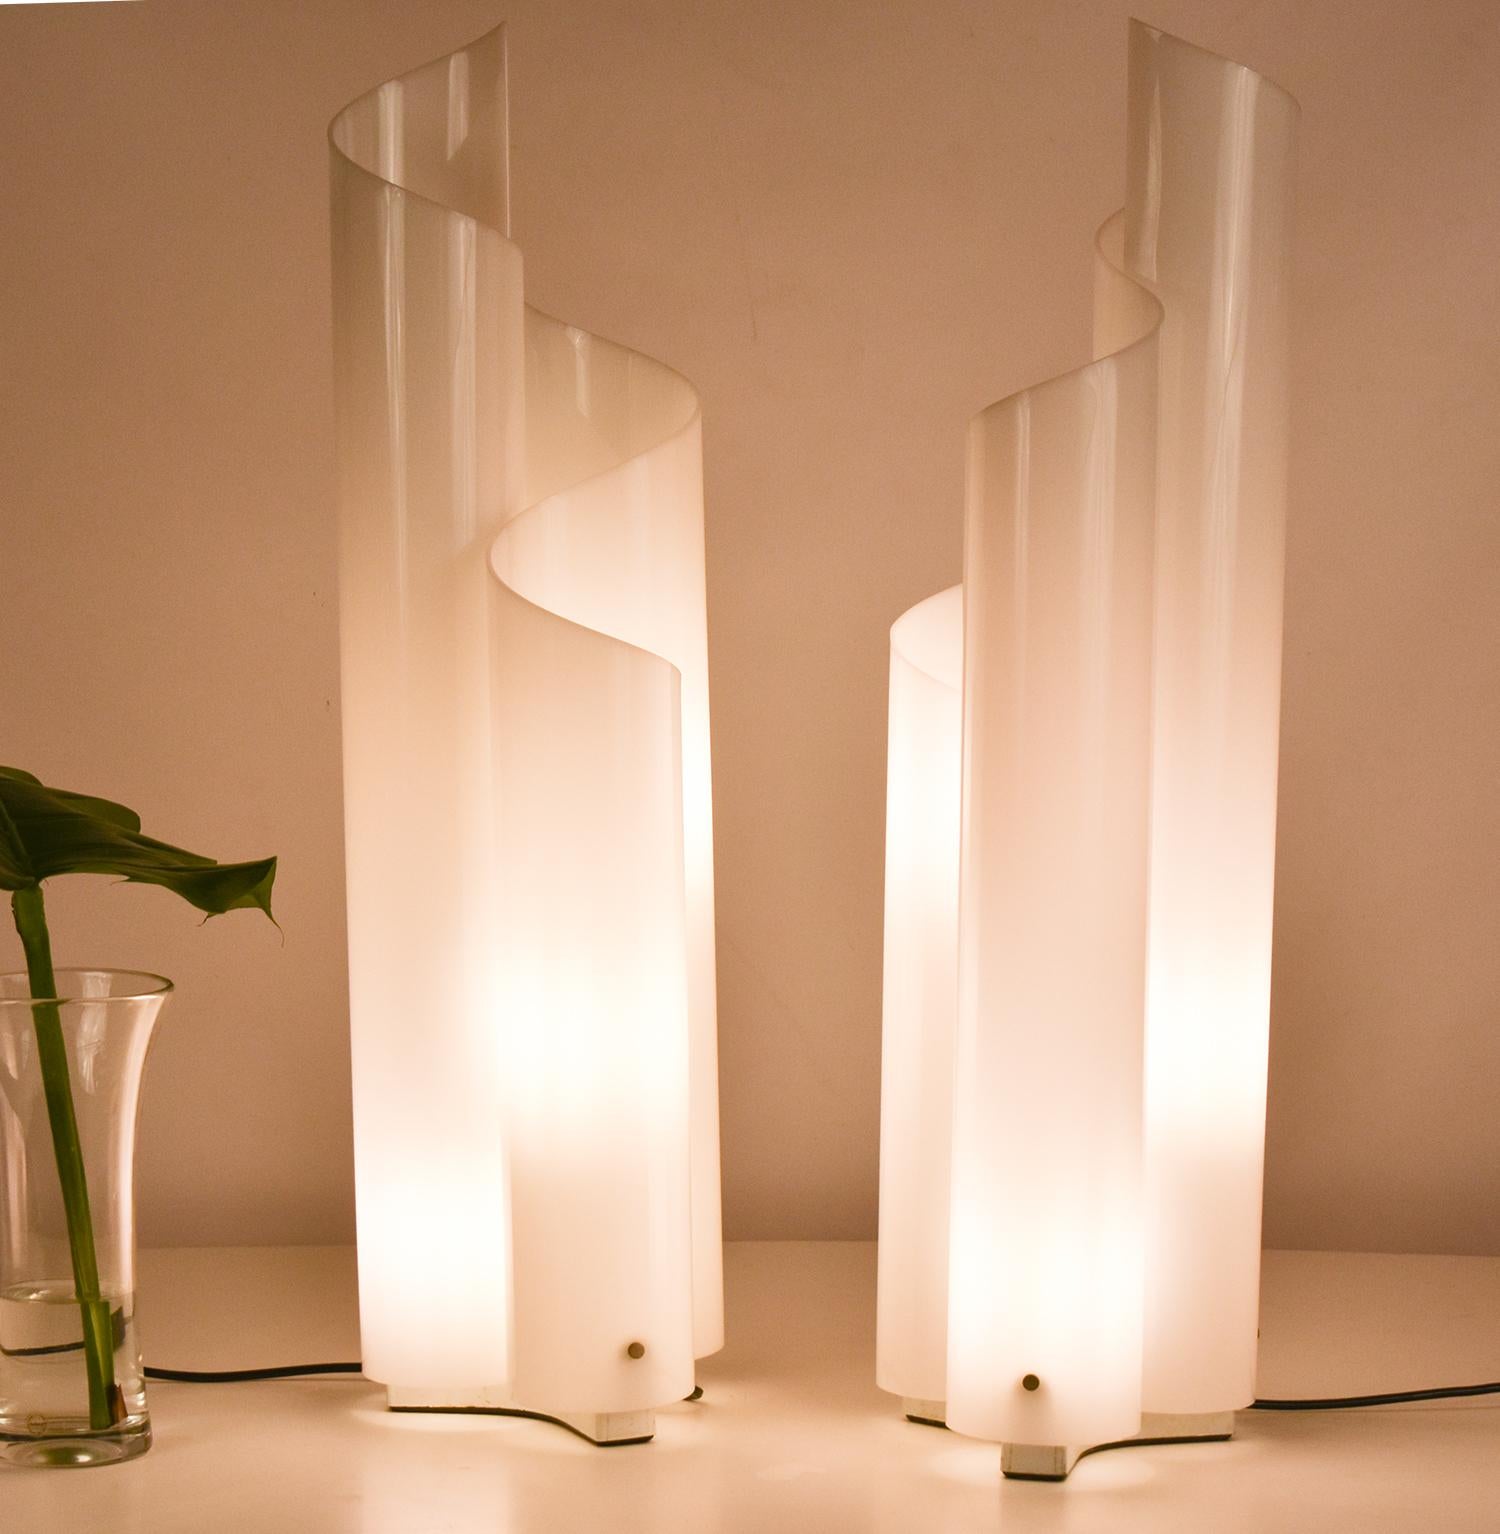 La lampe de table Mezzachimera a été conçue par Vico Magistretti pour Artemide en 1969.
La base est en métal peint en blanc et la structure/diffuseur en méthacrylate opale blanc incurvé à chaud.
Ces magnifiques lampes sont anciennes et en très bon